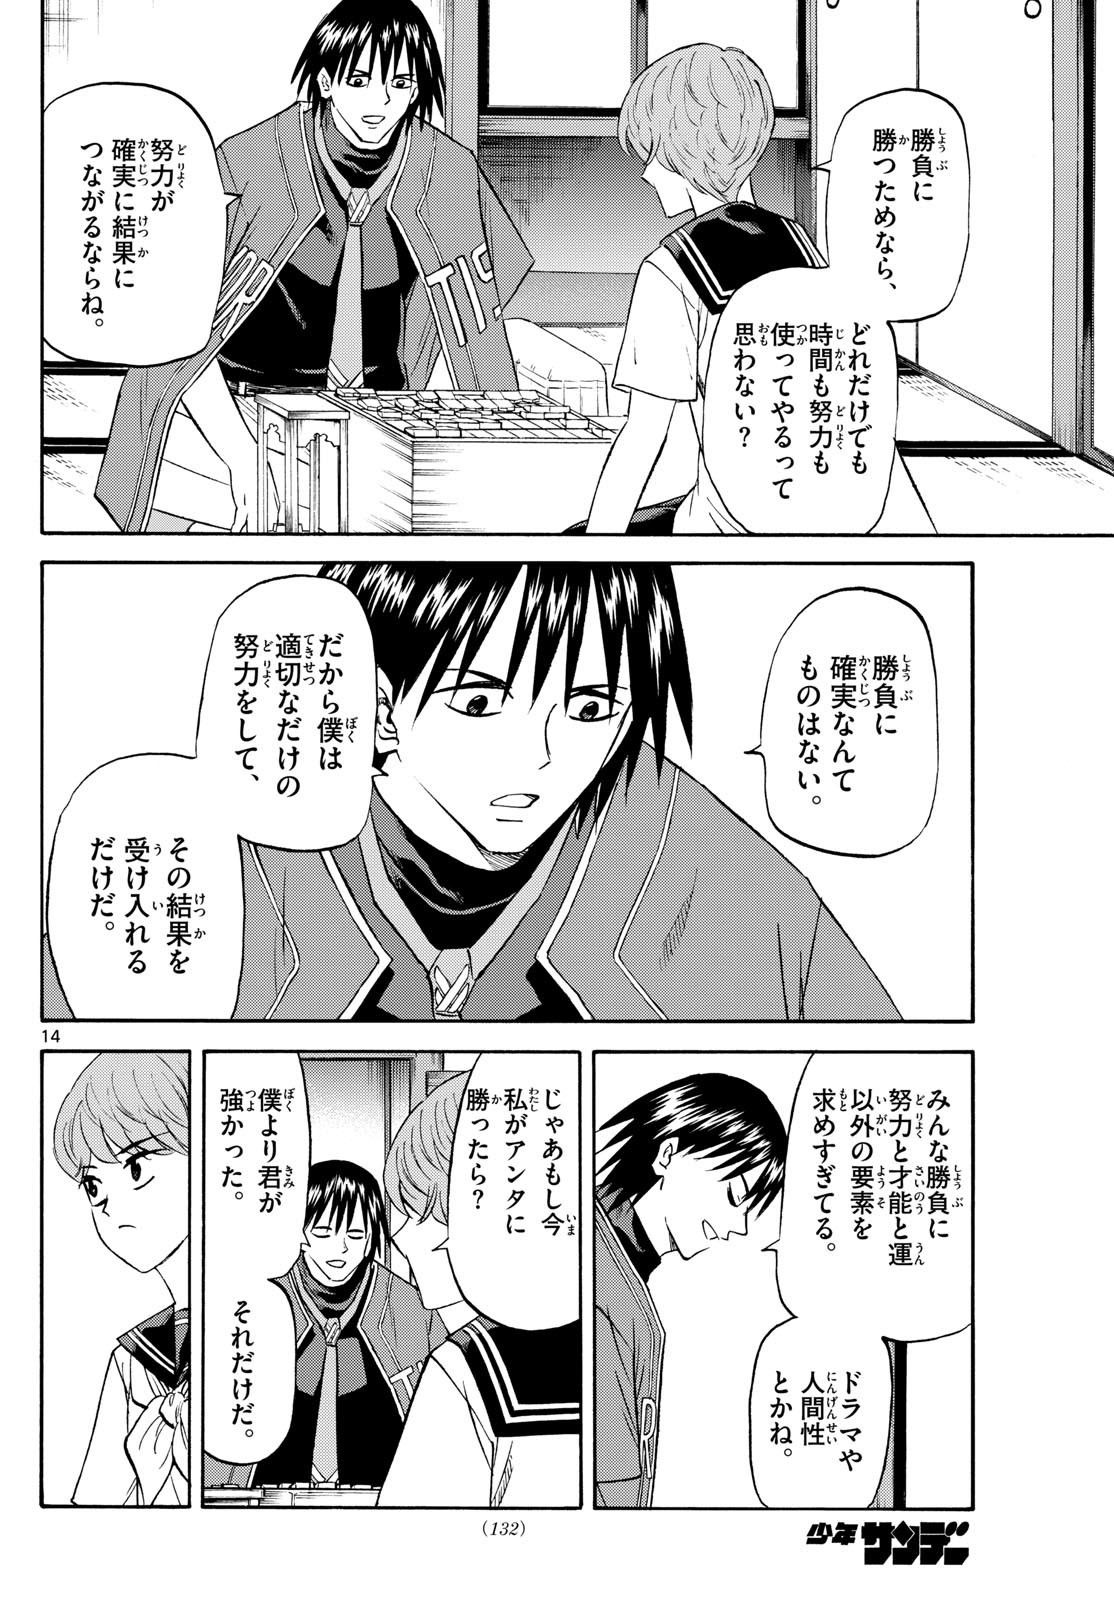 Tatsu to Ichigo - Chapter 197 - Page 14